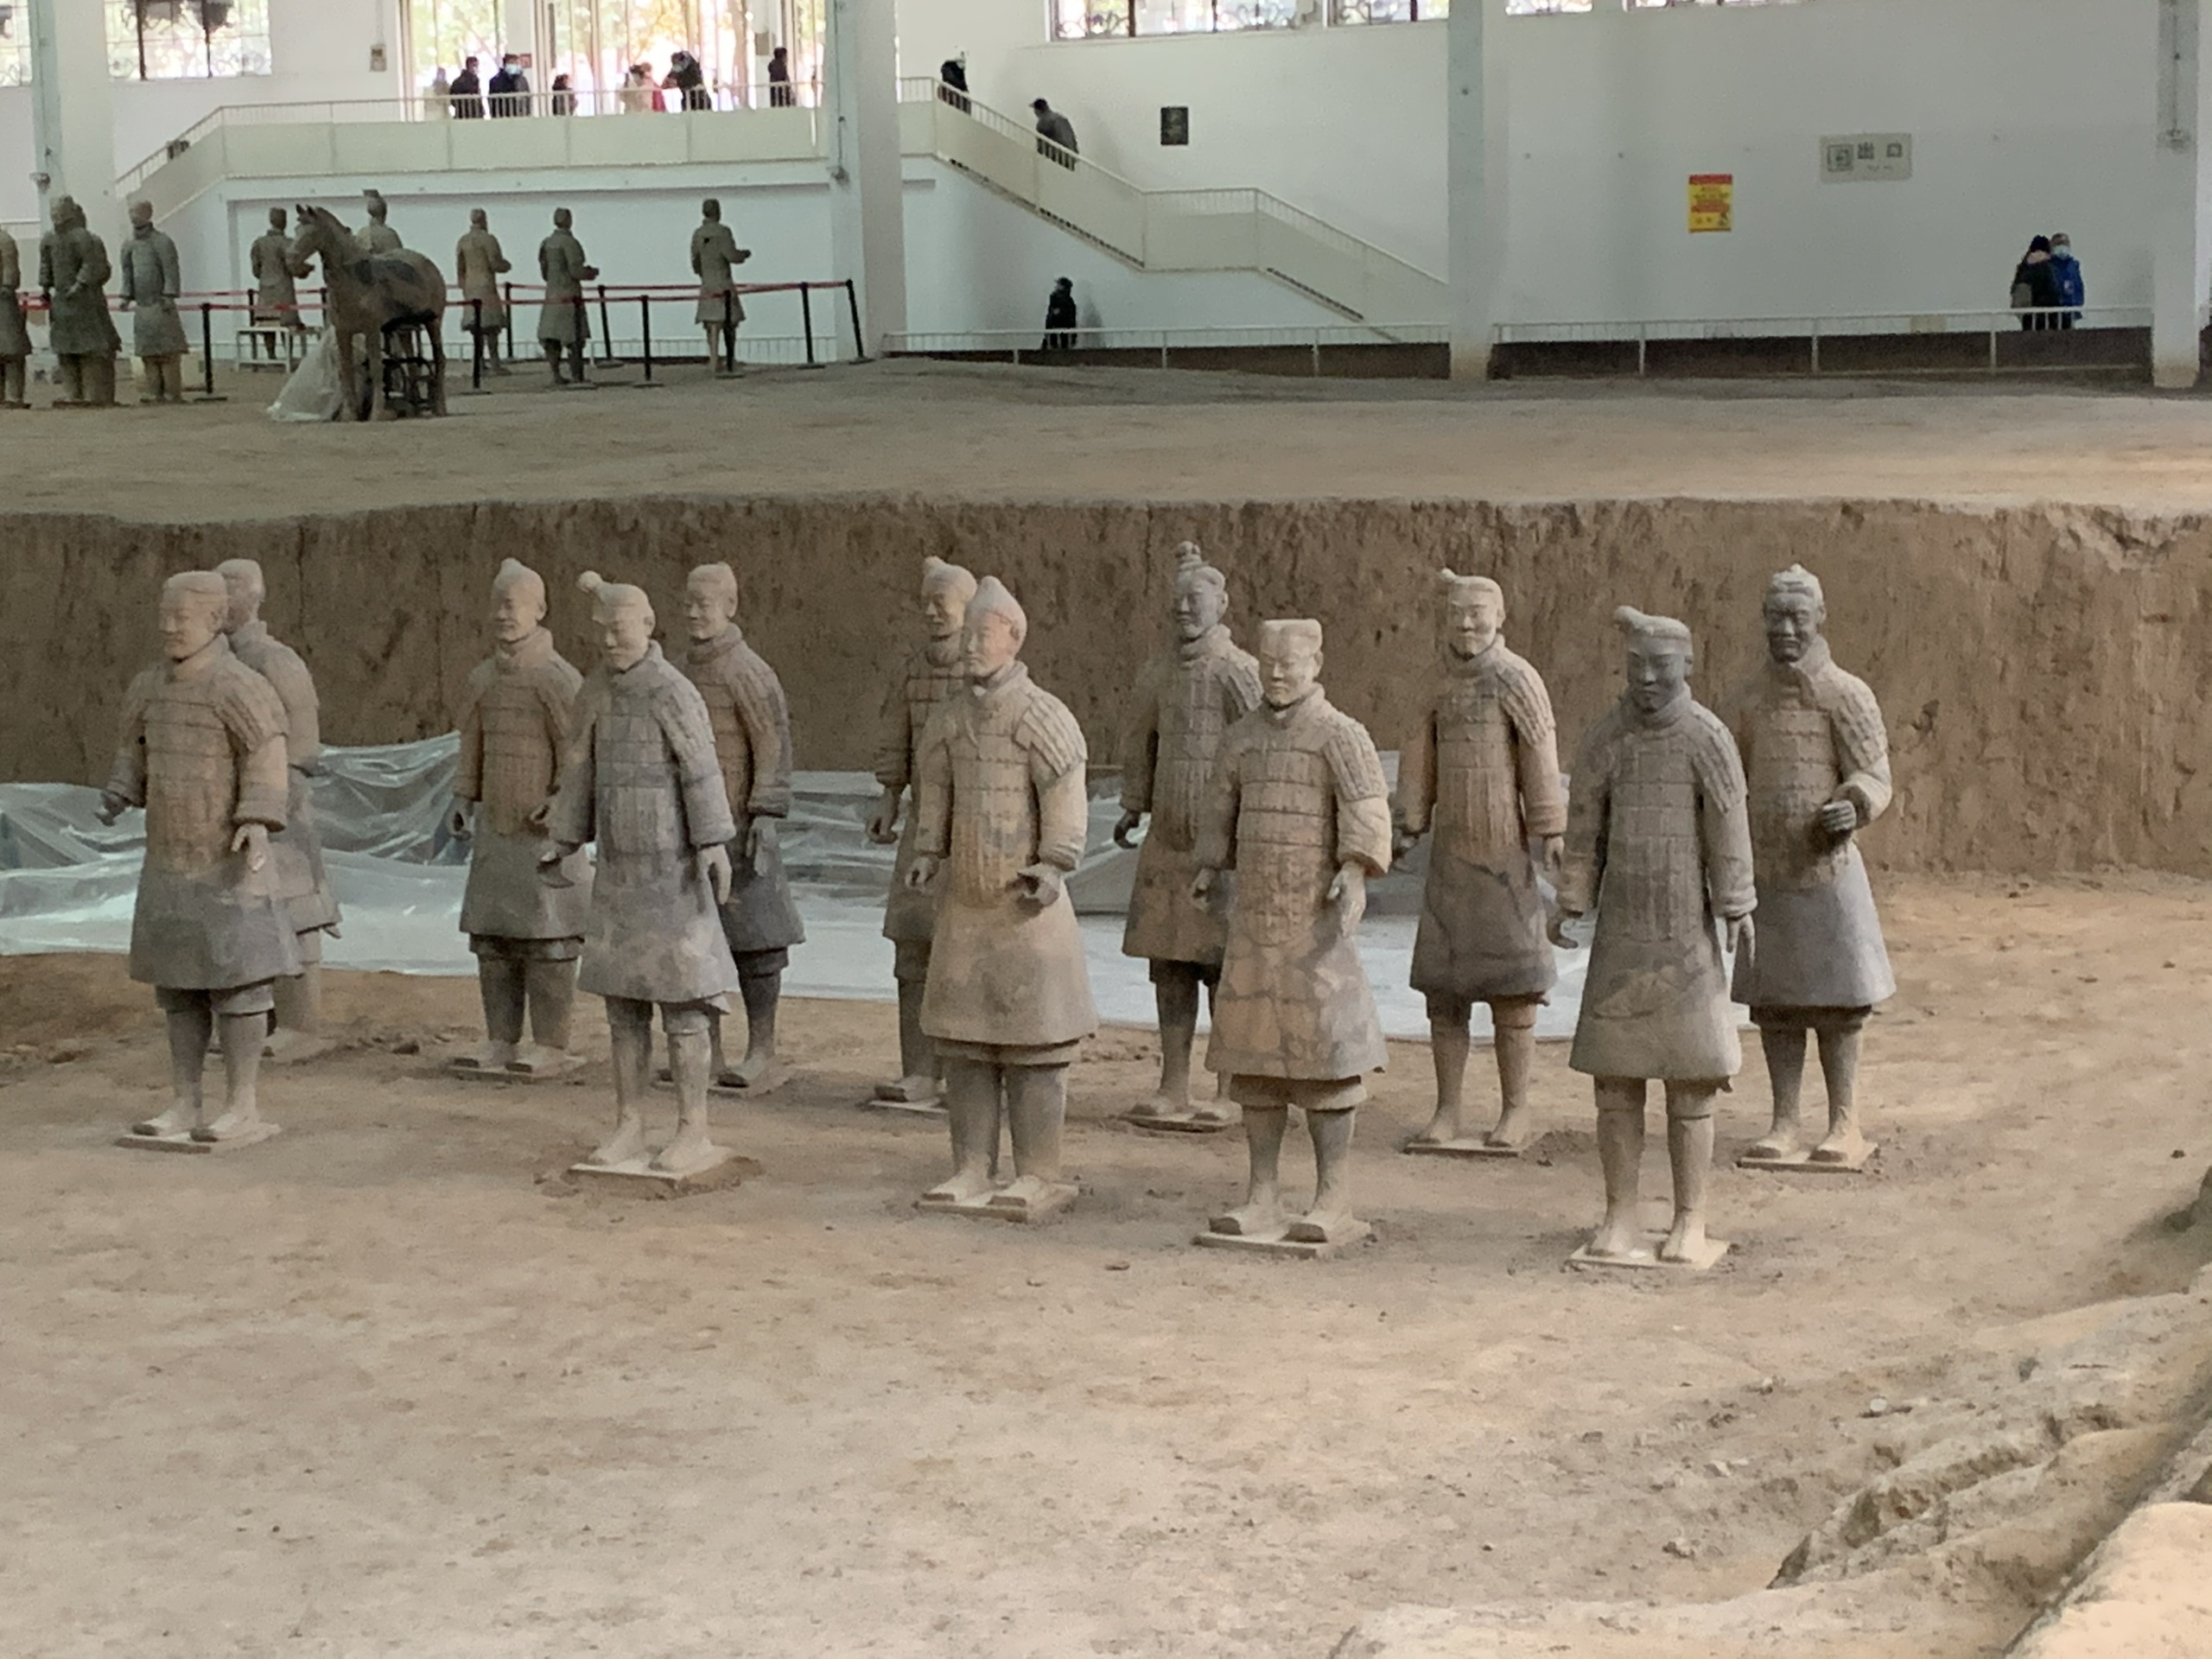 到了西安兵马俑是必须打卡的景点--秦始皇兵马俑博物馆